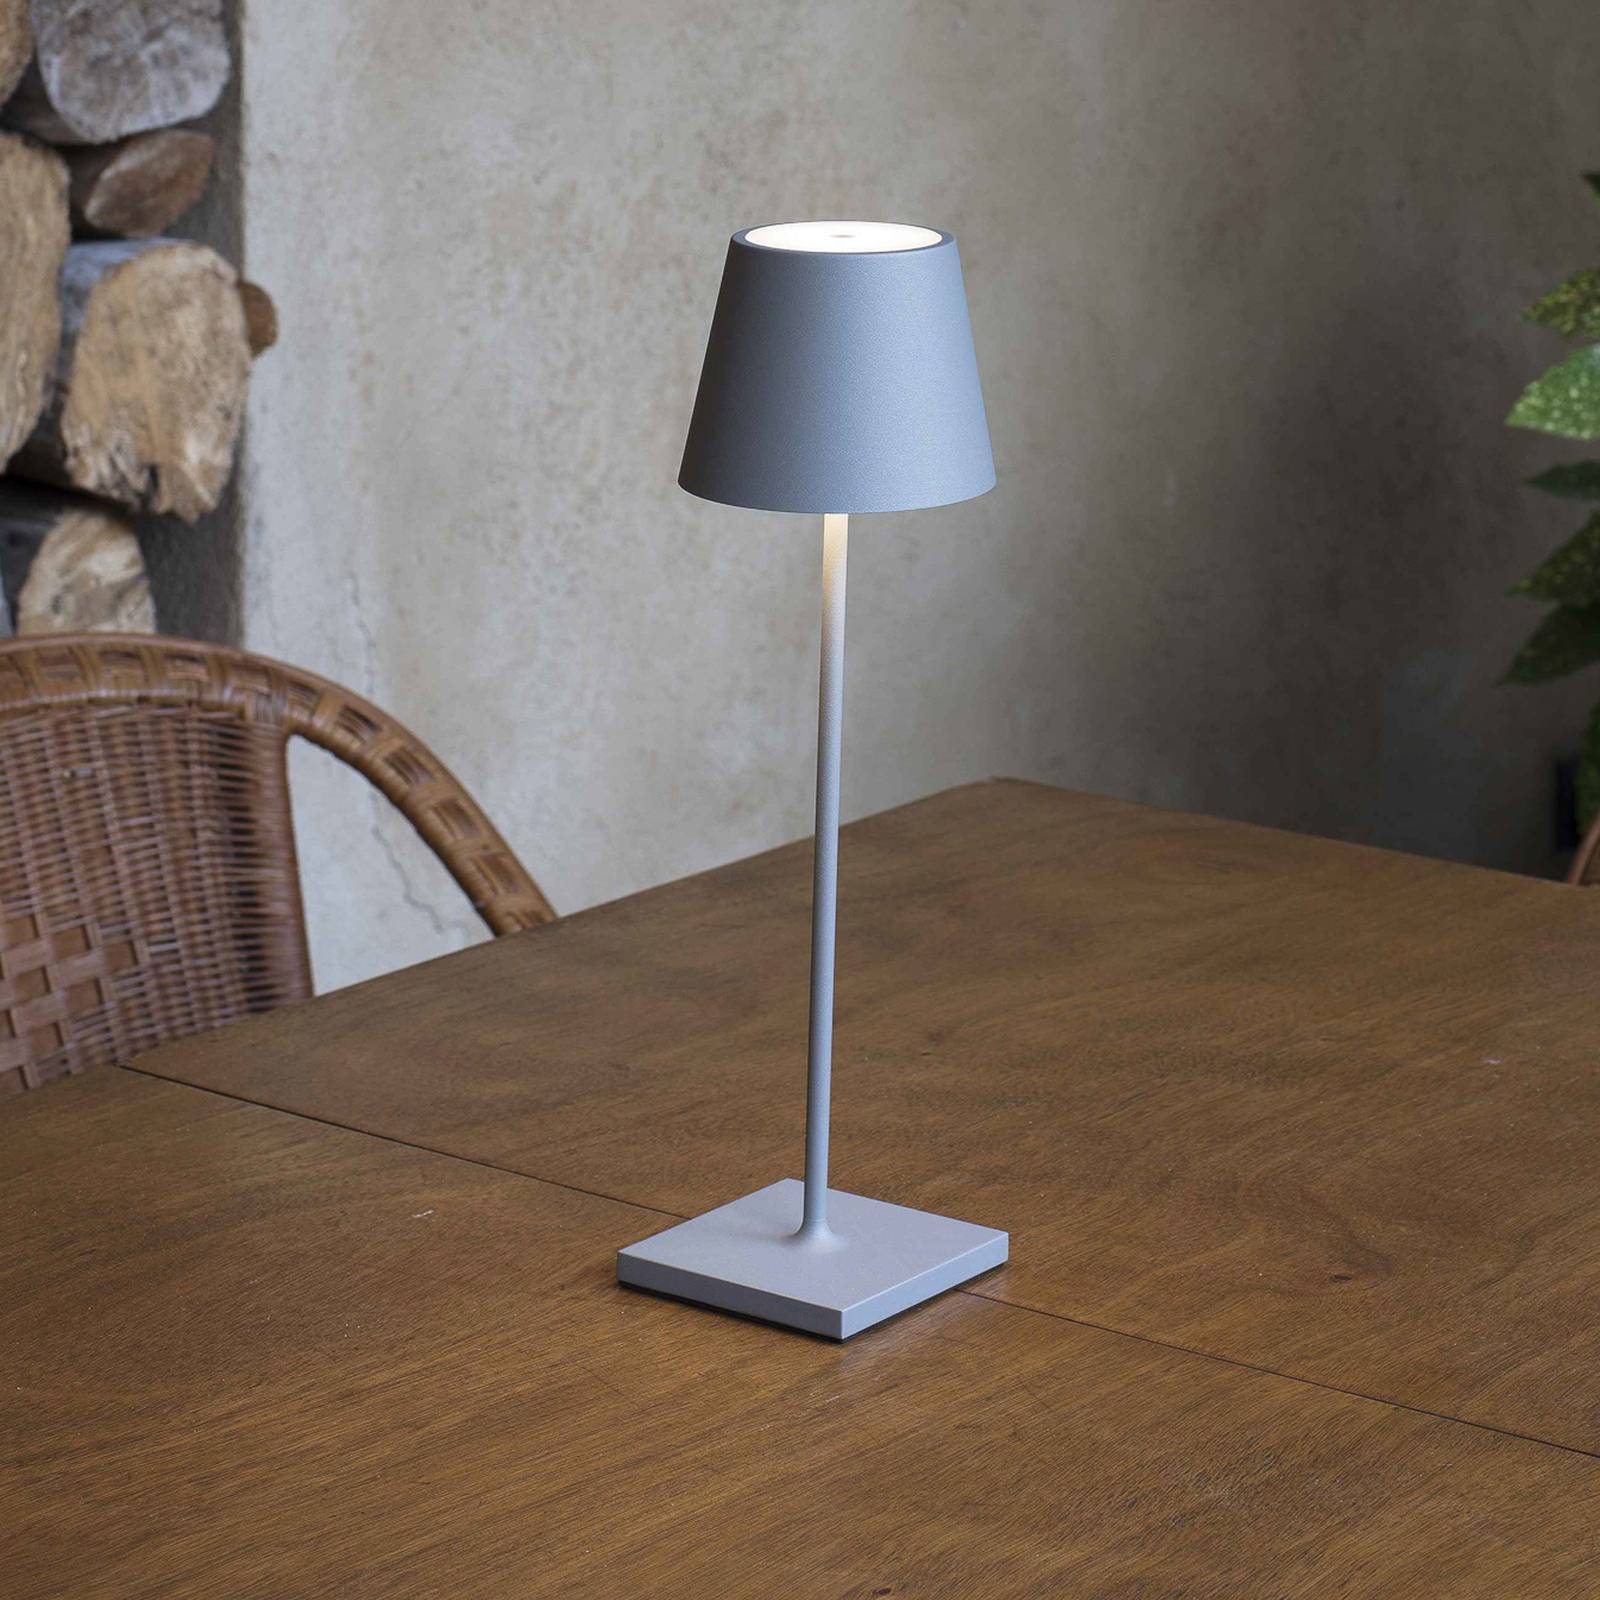 Faro barcelona led asztali lámpa toc usb töltővel, ip54, szürke